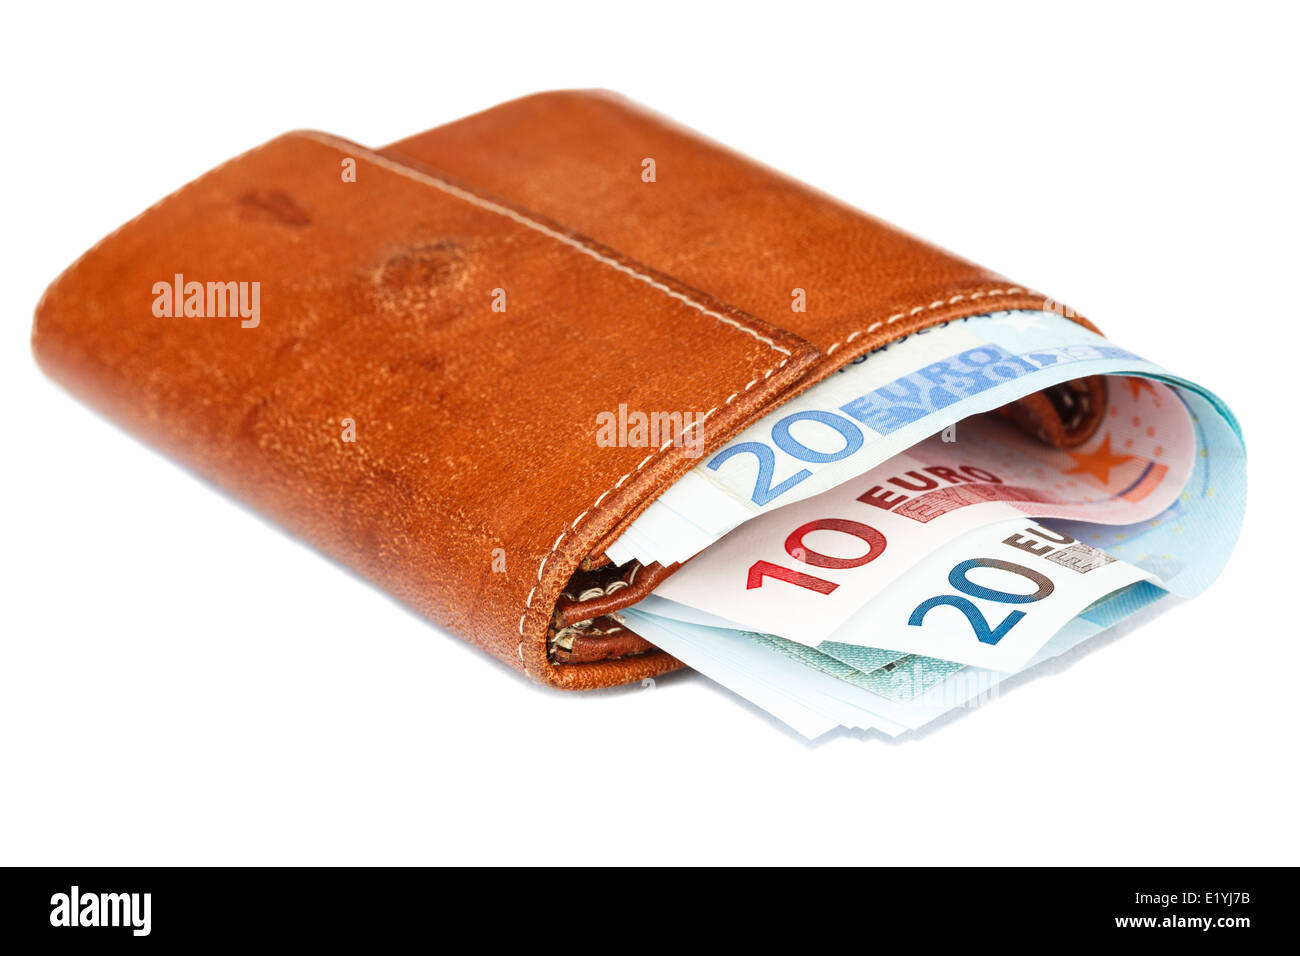 Portefeuille en cuir brun vieux bourré plein d'euros Les notes de la zone euro ont coupé et isolé sur un Fond blanc Uni Europe Banque D'Images